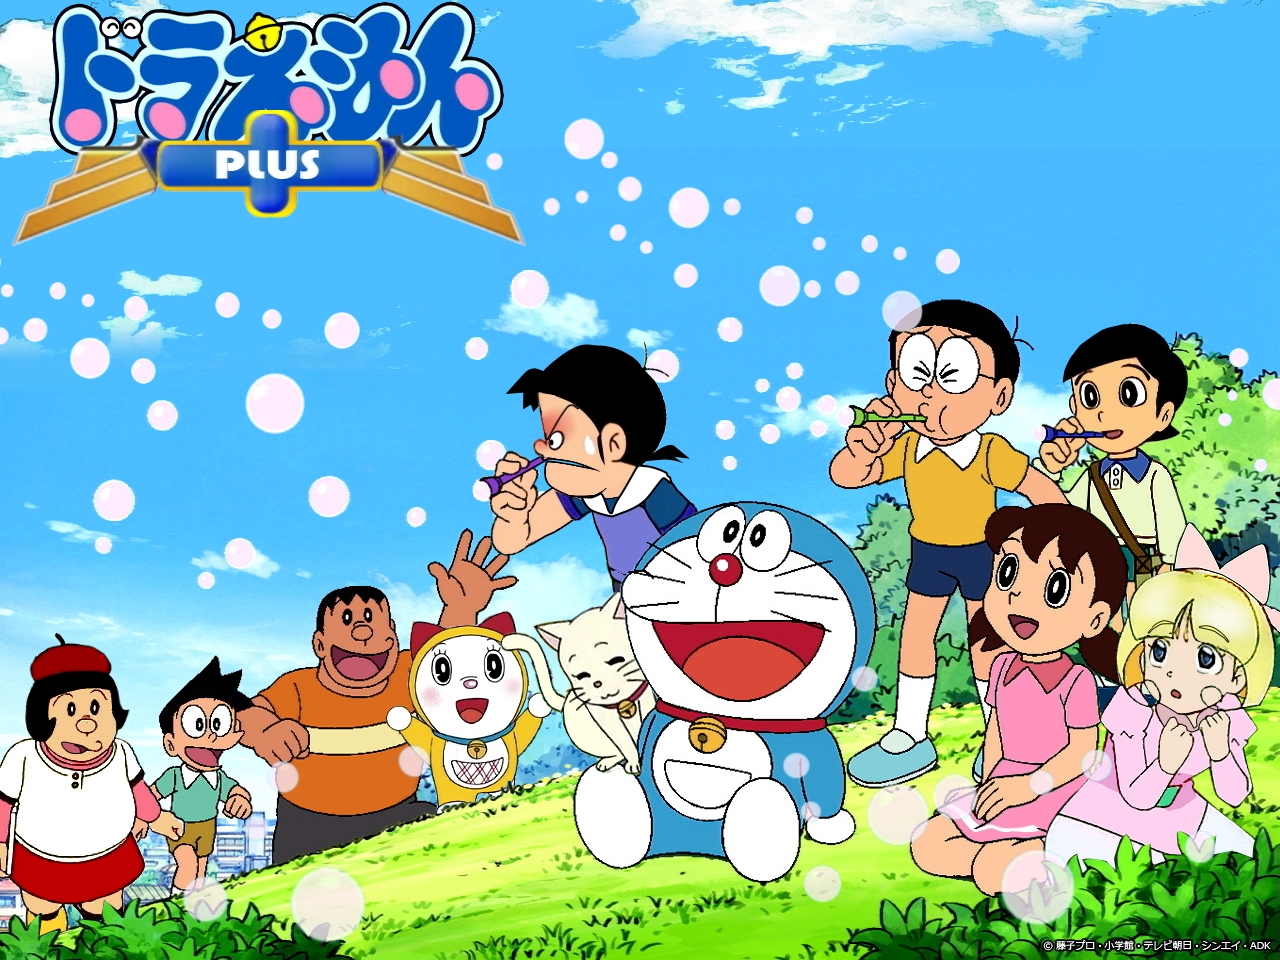 Hình ảnh Doraemon: Khám phá những hình ảnh đầy màu sắc và tươi sáng về chú mèo máy Doraemon. Từ những hình ảnh vui nhộn đến những hình ảnh cảm động, Doraemon sẽ để lại dấu ấn khó quên trong trái tim bạn.